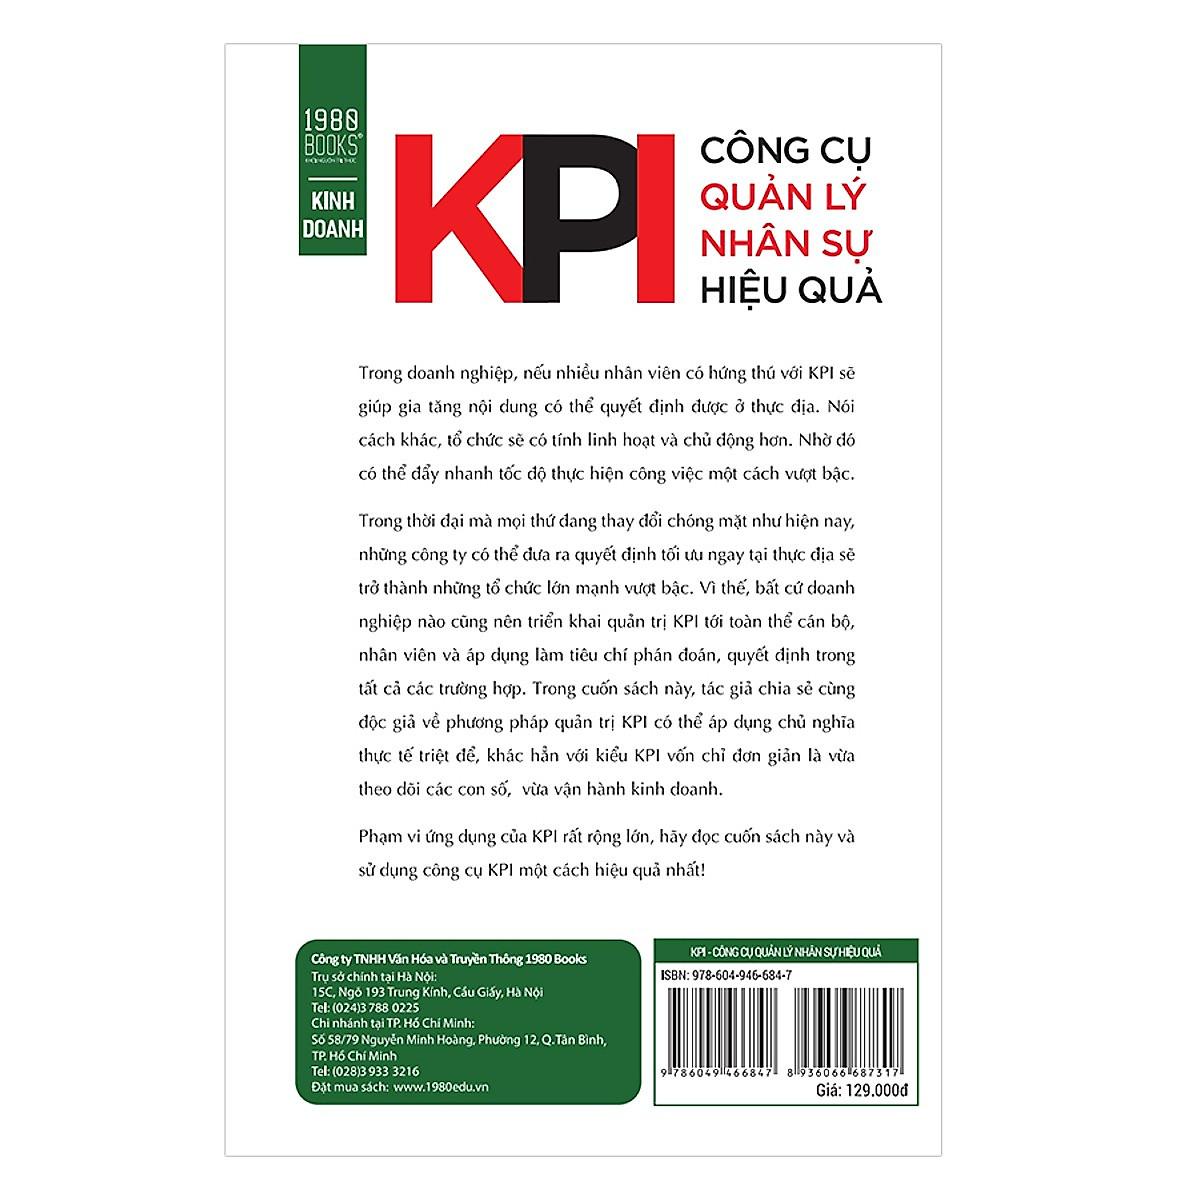 KPI - Công Cụ Quản Lý Nhân Sự Hiệu Quả - Bản Quyền